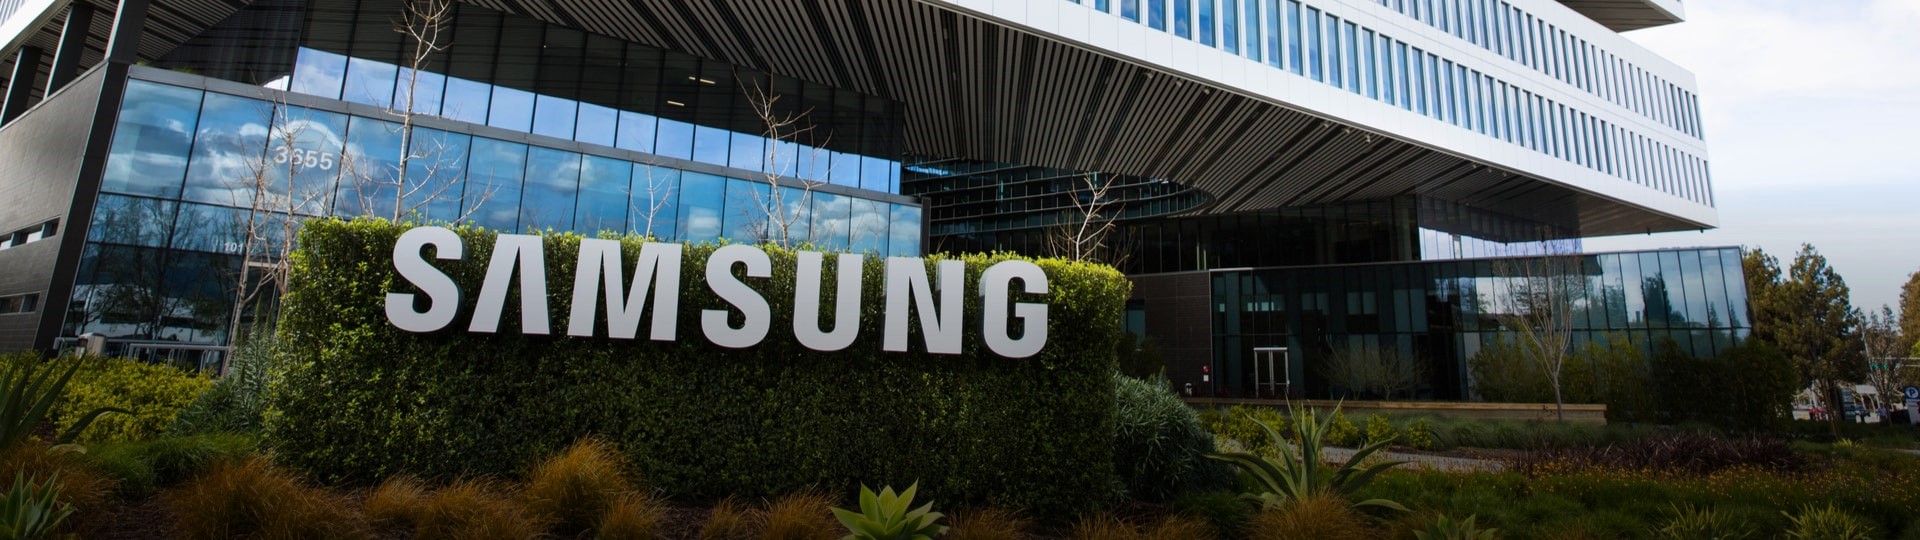 Samsung podle předběžných údajů zvýšil čtvrtletní zisk o 44 procent